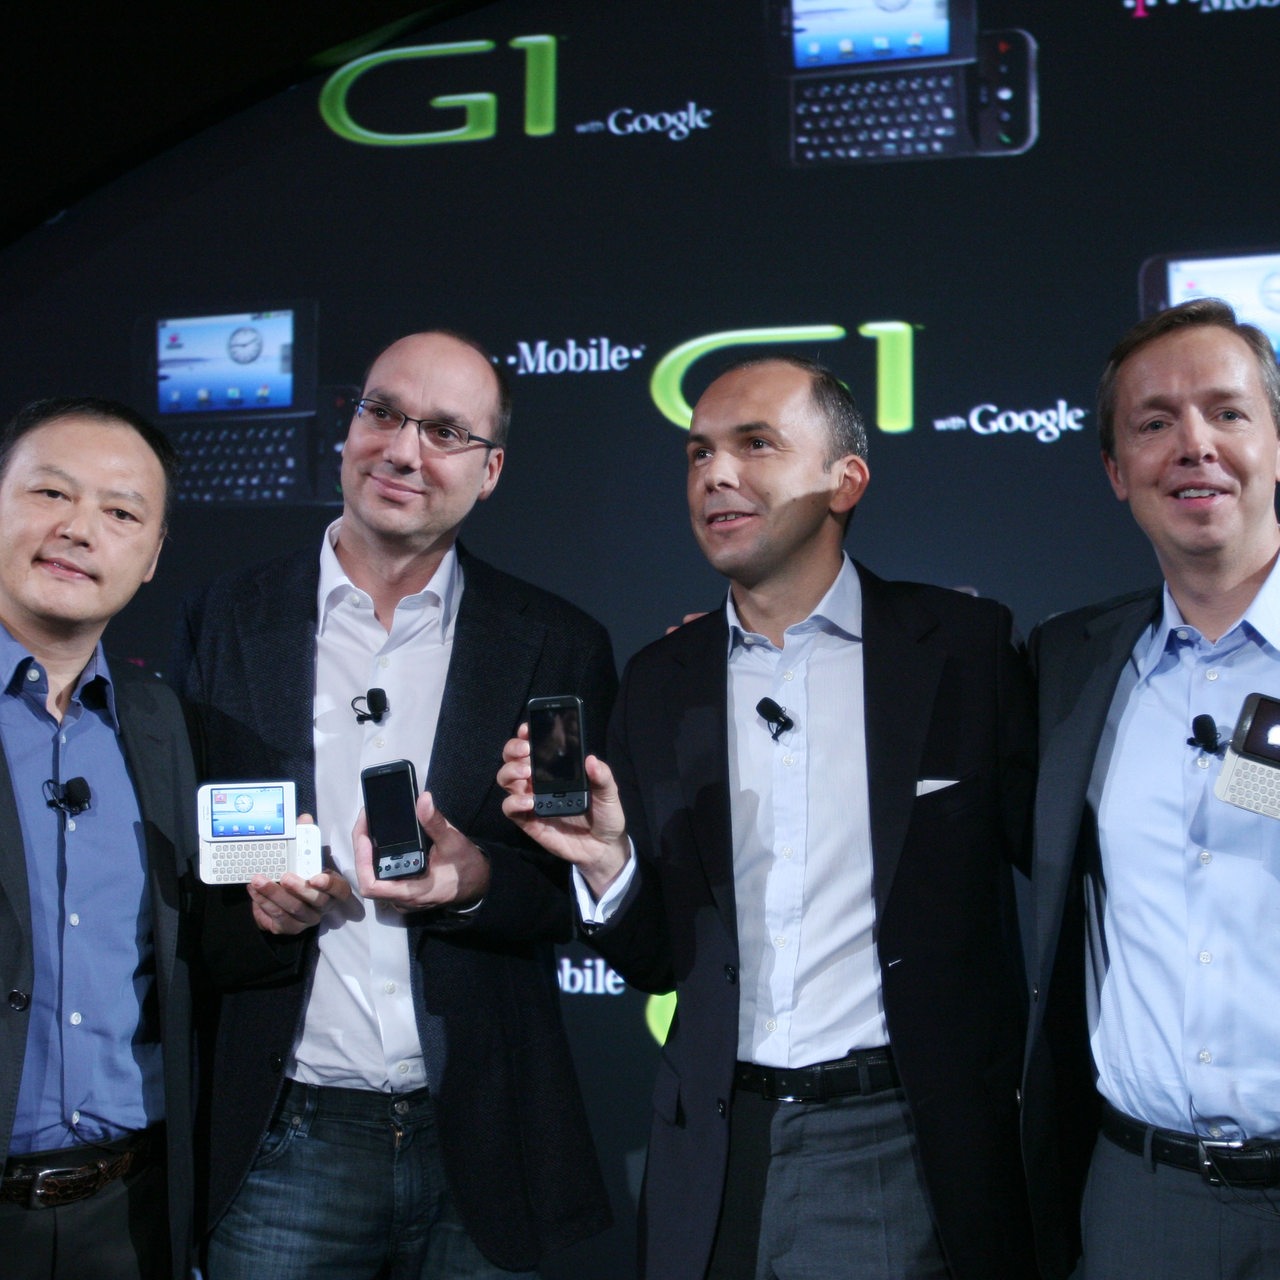 Das erste Android Telefon wird am Markt eingeführt. Peter Chou, CEO von HTC, Andy Rubin, Google, Christopher Schlaffer, Telekom und Cole Brodman, T-Mobile USA, präsentieren die verschiedenen Ausführungen 